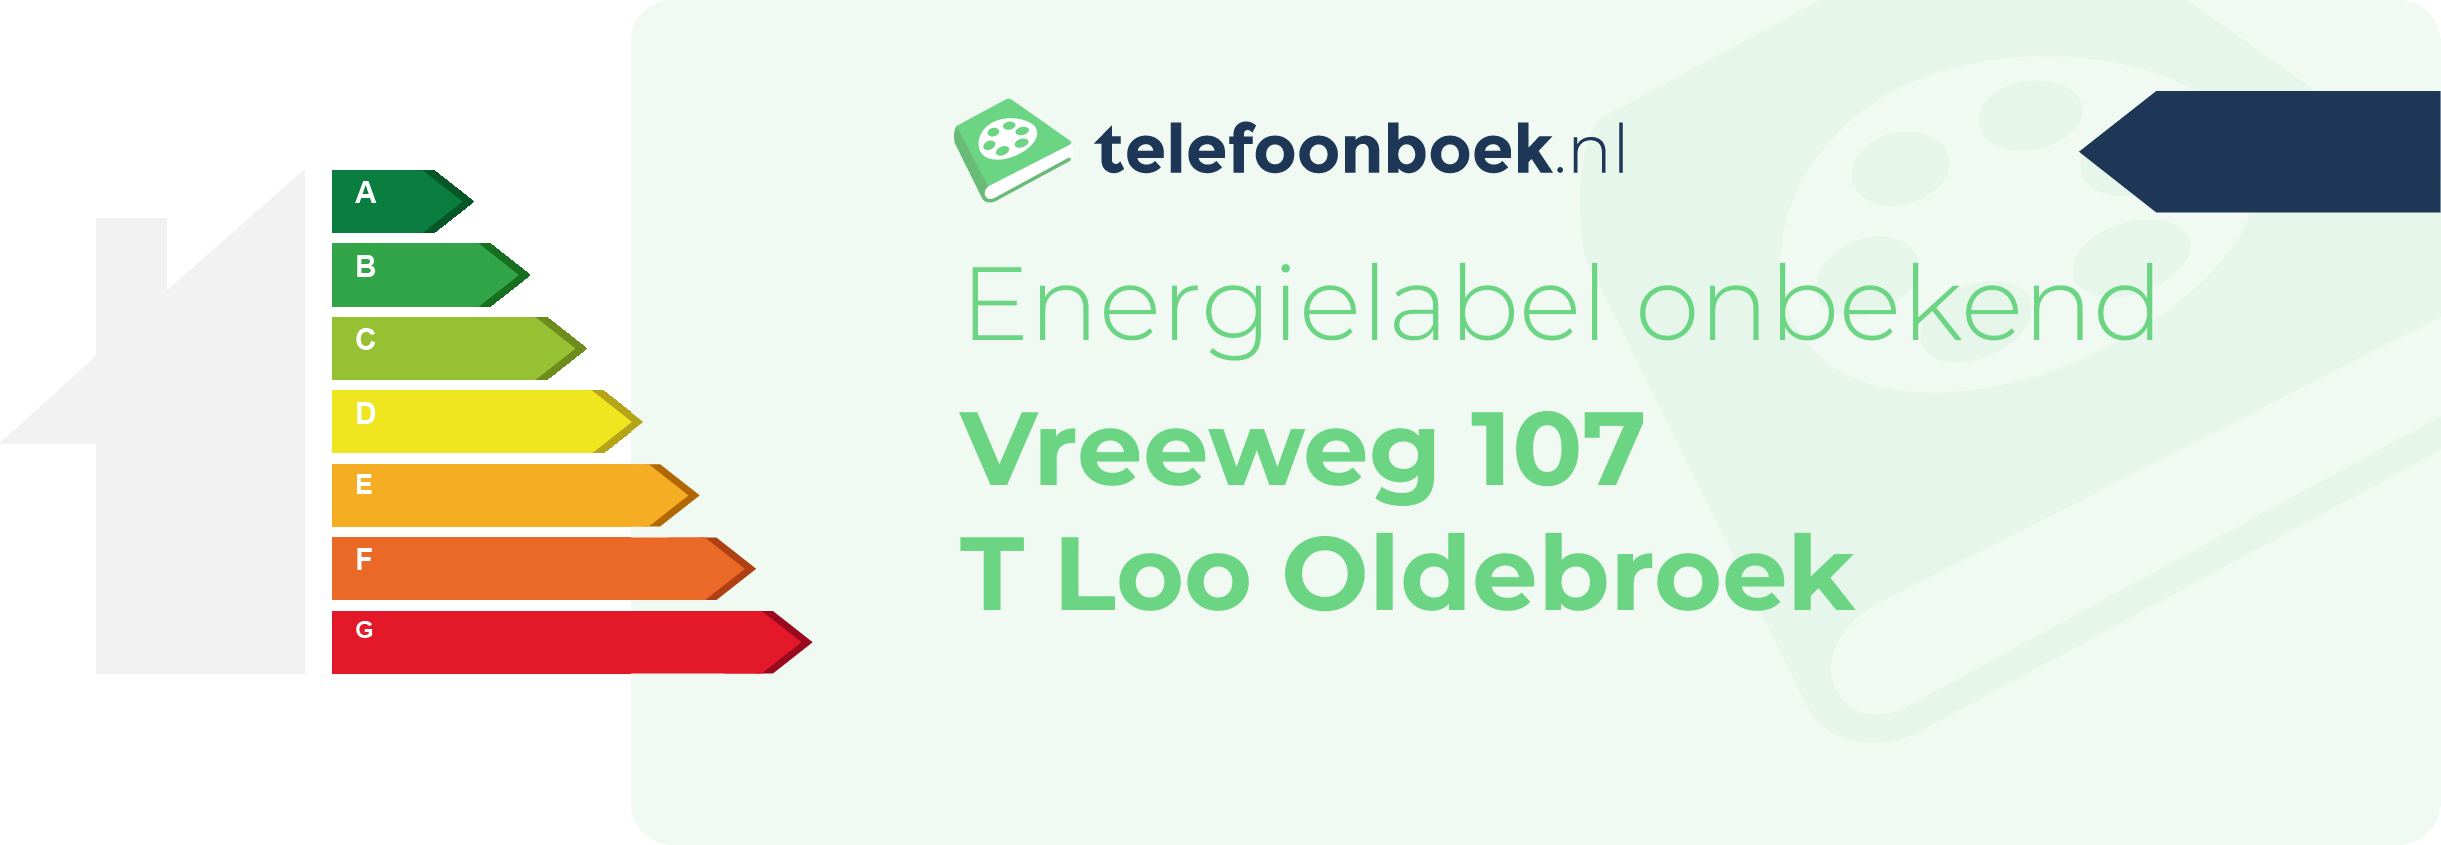 Energielabel Vreeweg 107 T Loo Oldebroek